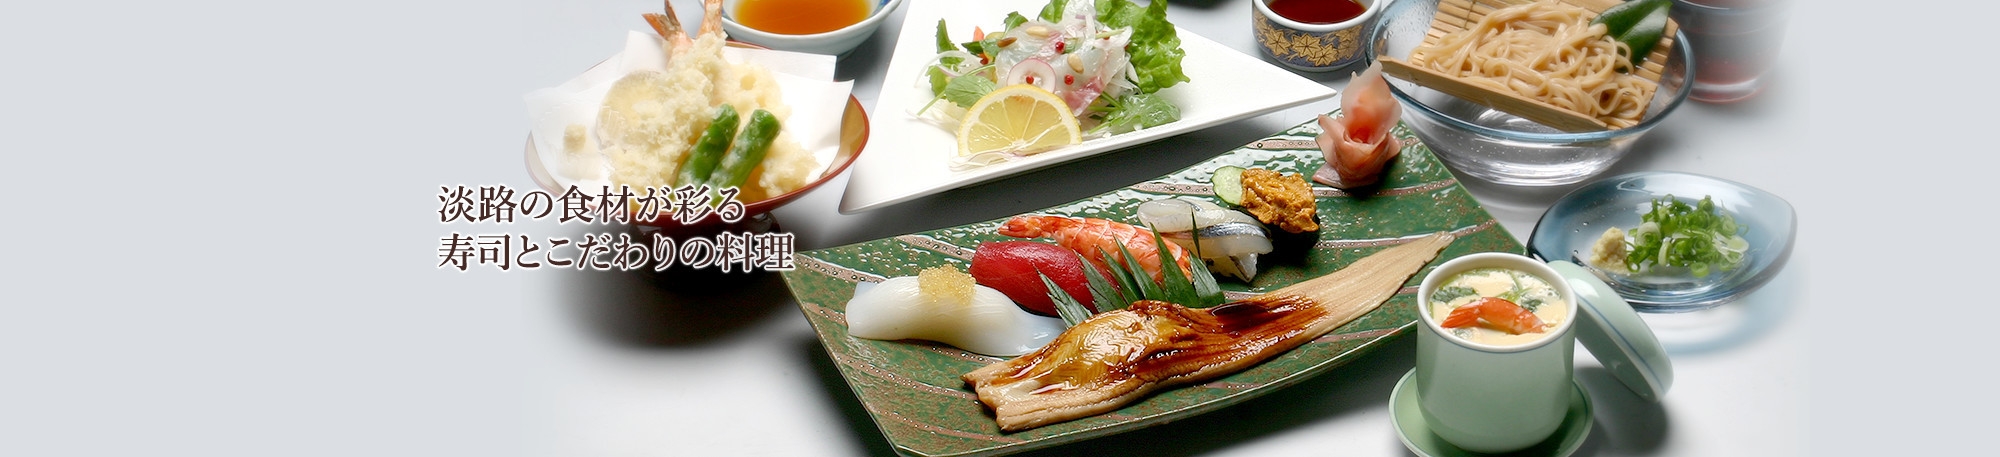 淡路の食材が彩る寿司とこだわりの料理